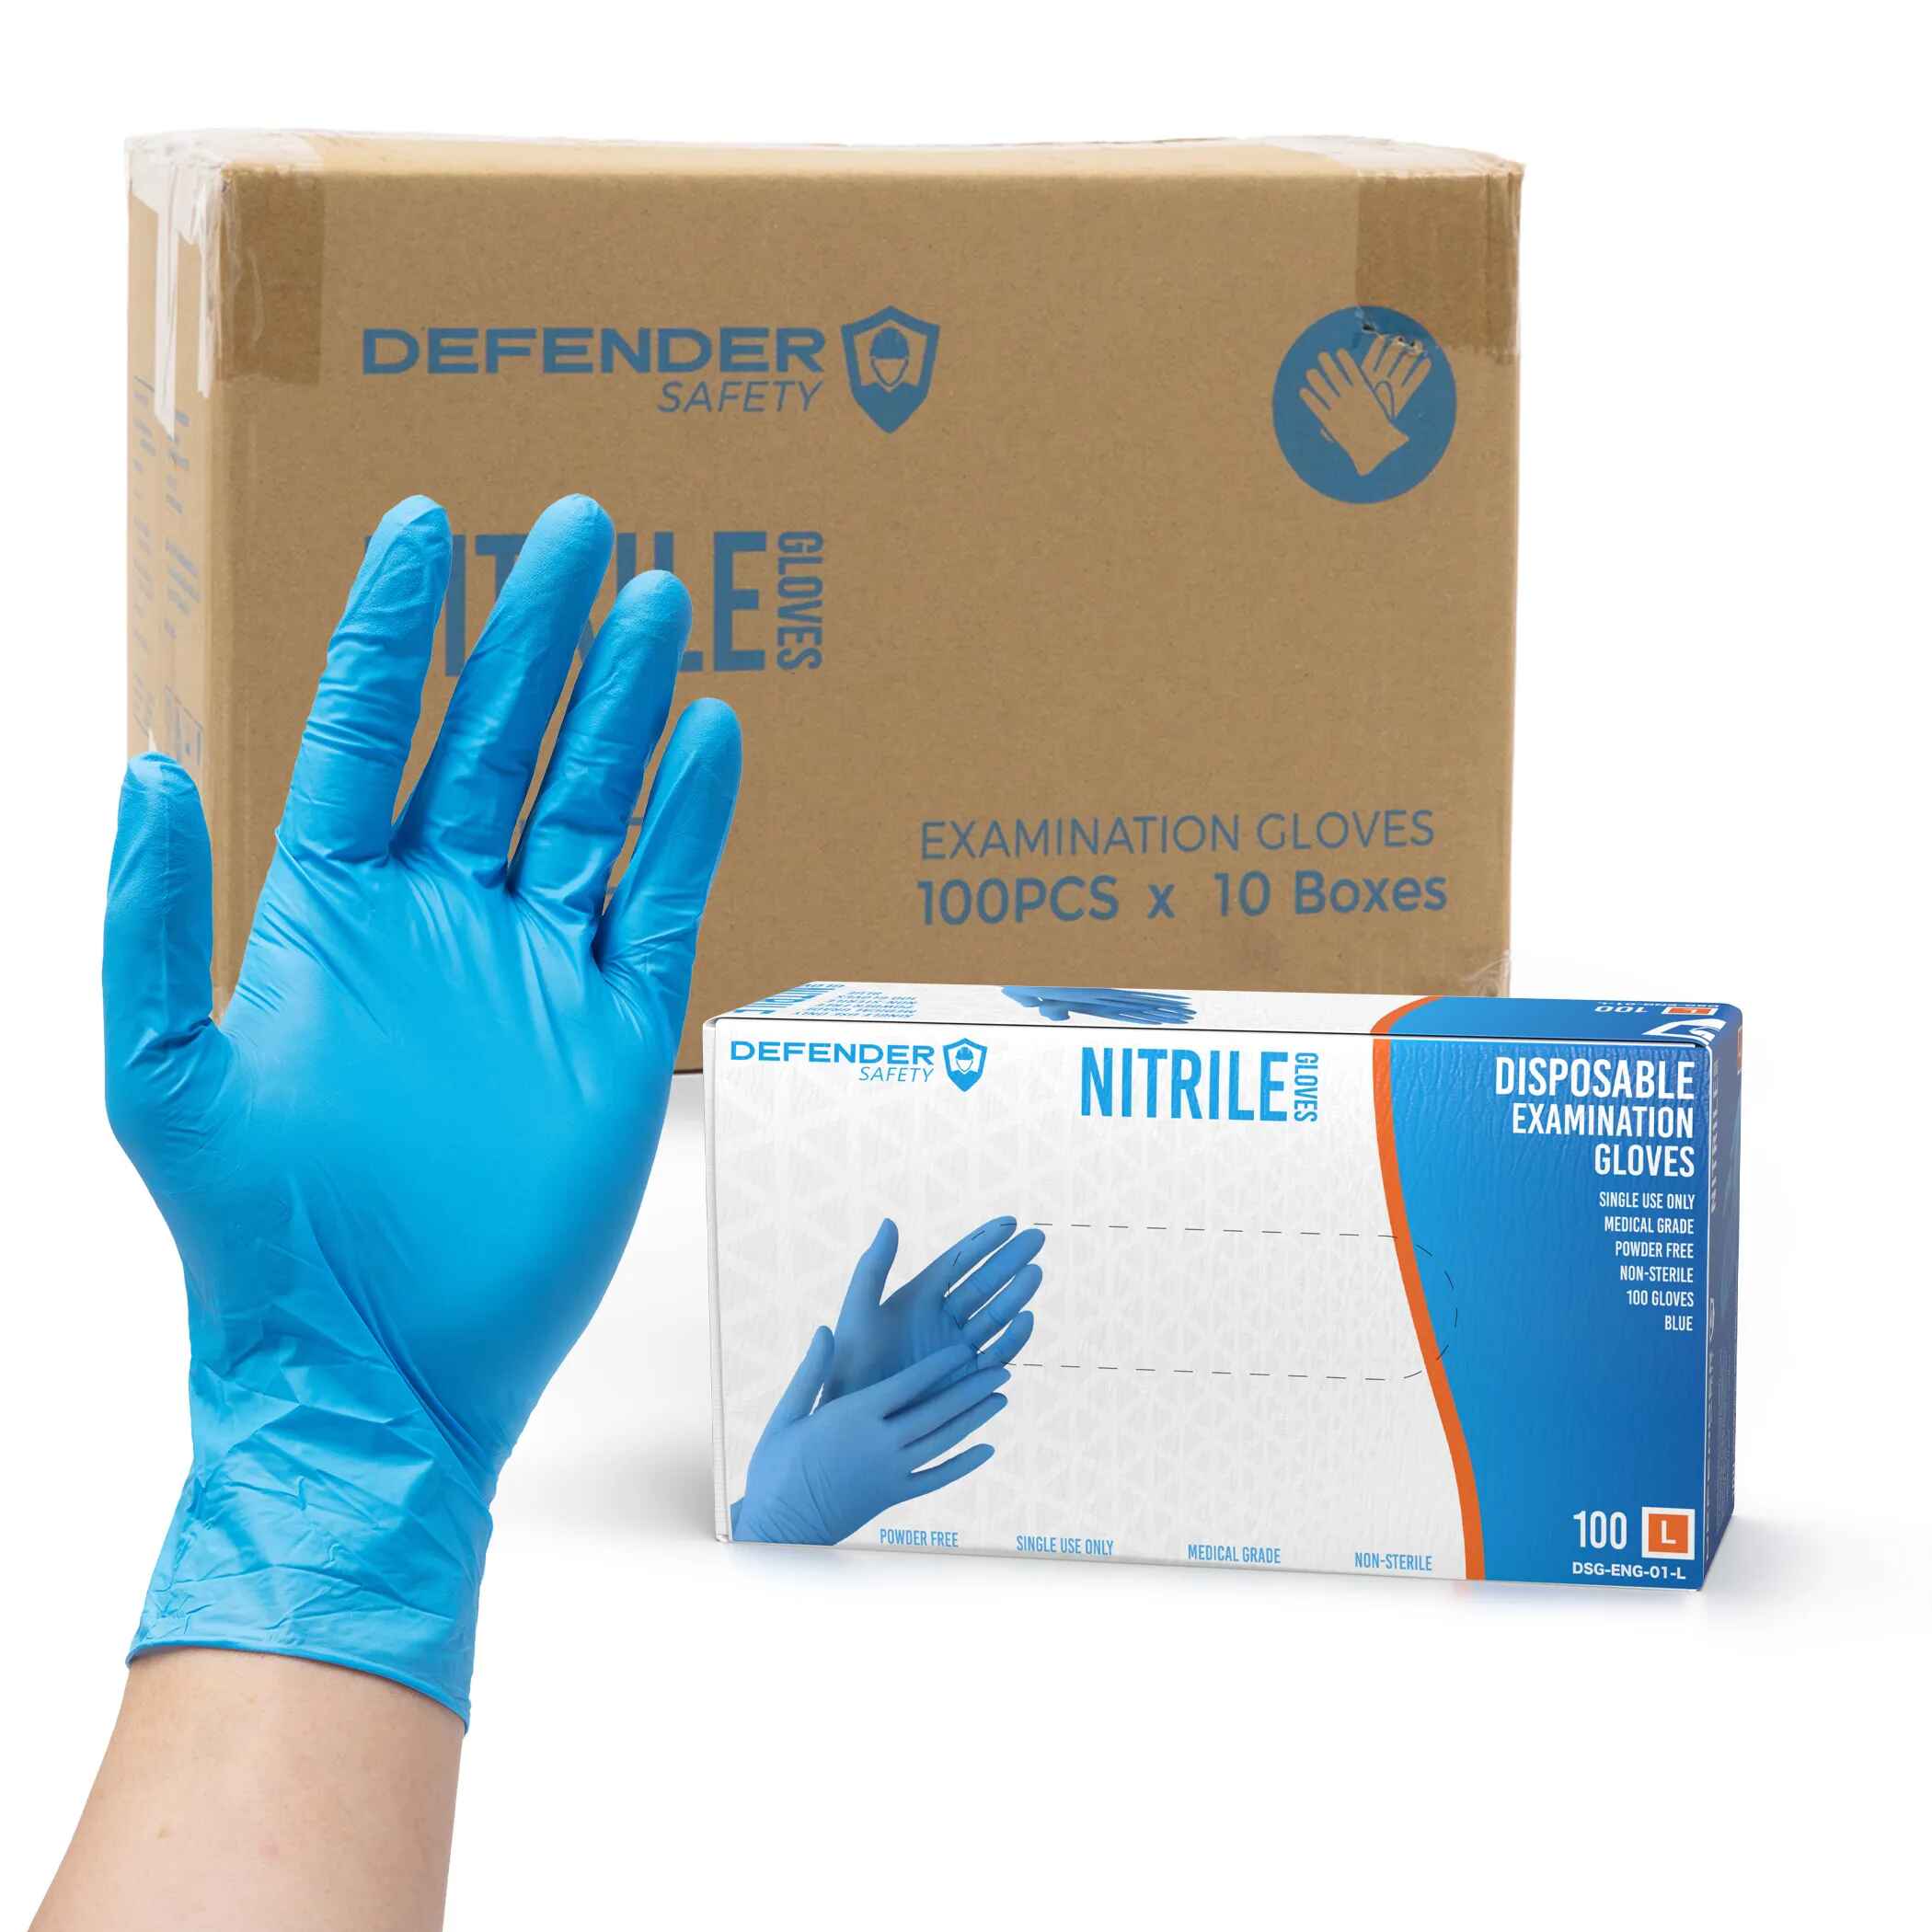 https://defendersafety.com/cdn/shop/products/35-mil-blue-nitrile-gloves-medical-grade-35-mil-powder-free-blue-643775.jpg?v=1690825028&width=2100